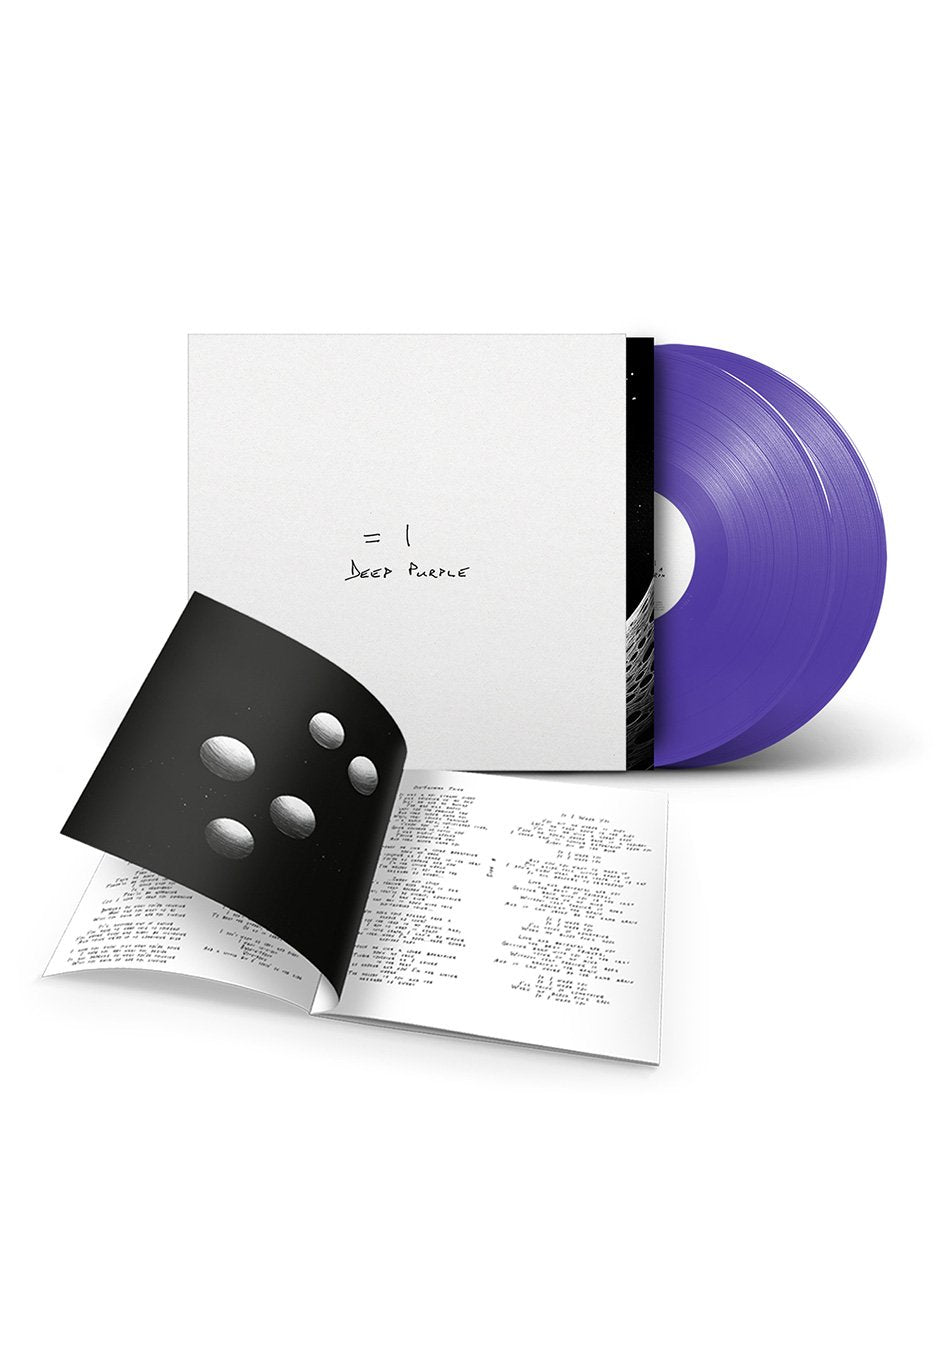 Deep Purple - =1 Ltd. Purple - Colored 2 Vinyl